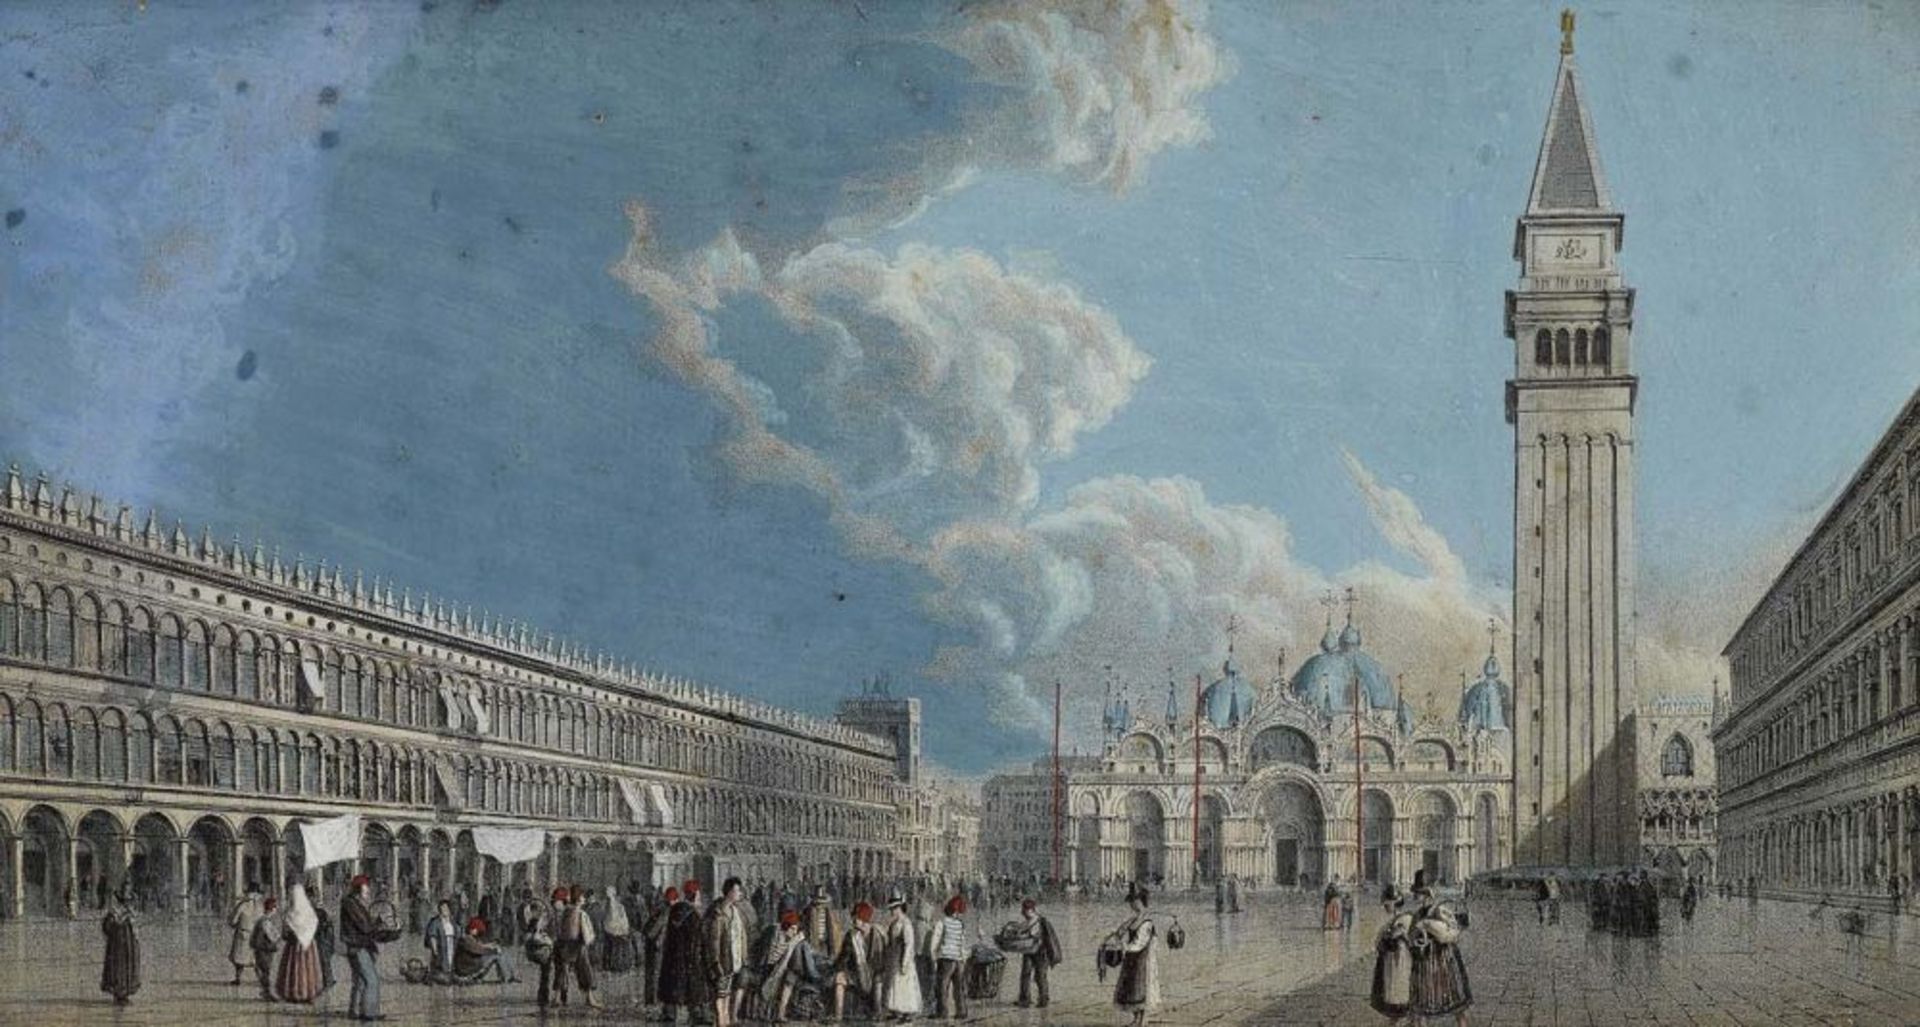 Italien 19. Jh.  Venezianische Ansichten: Markusplatz - Markusdom - Riva degli Schiavoni mit